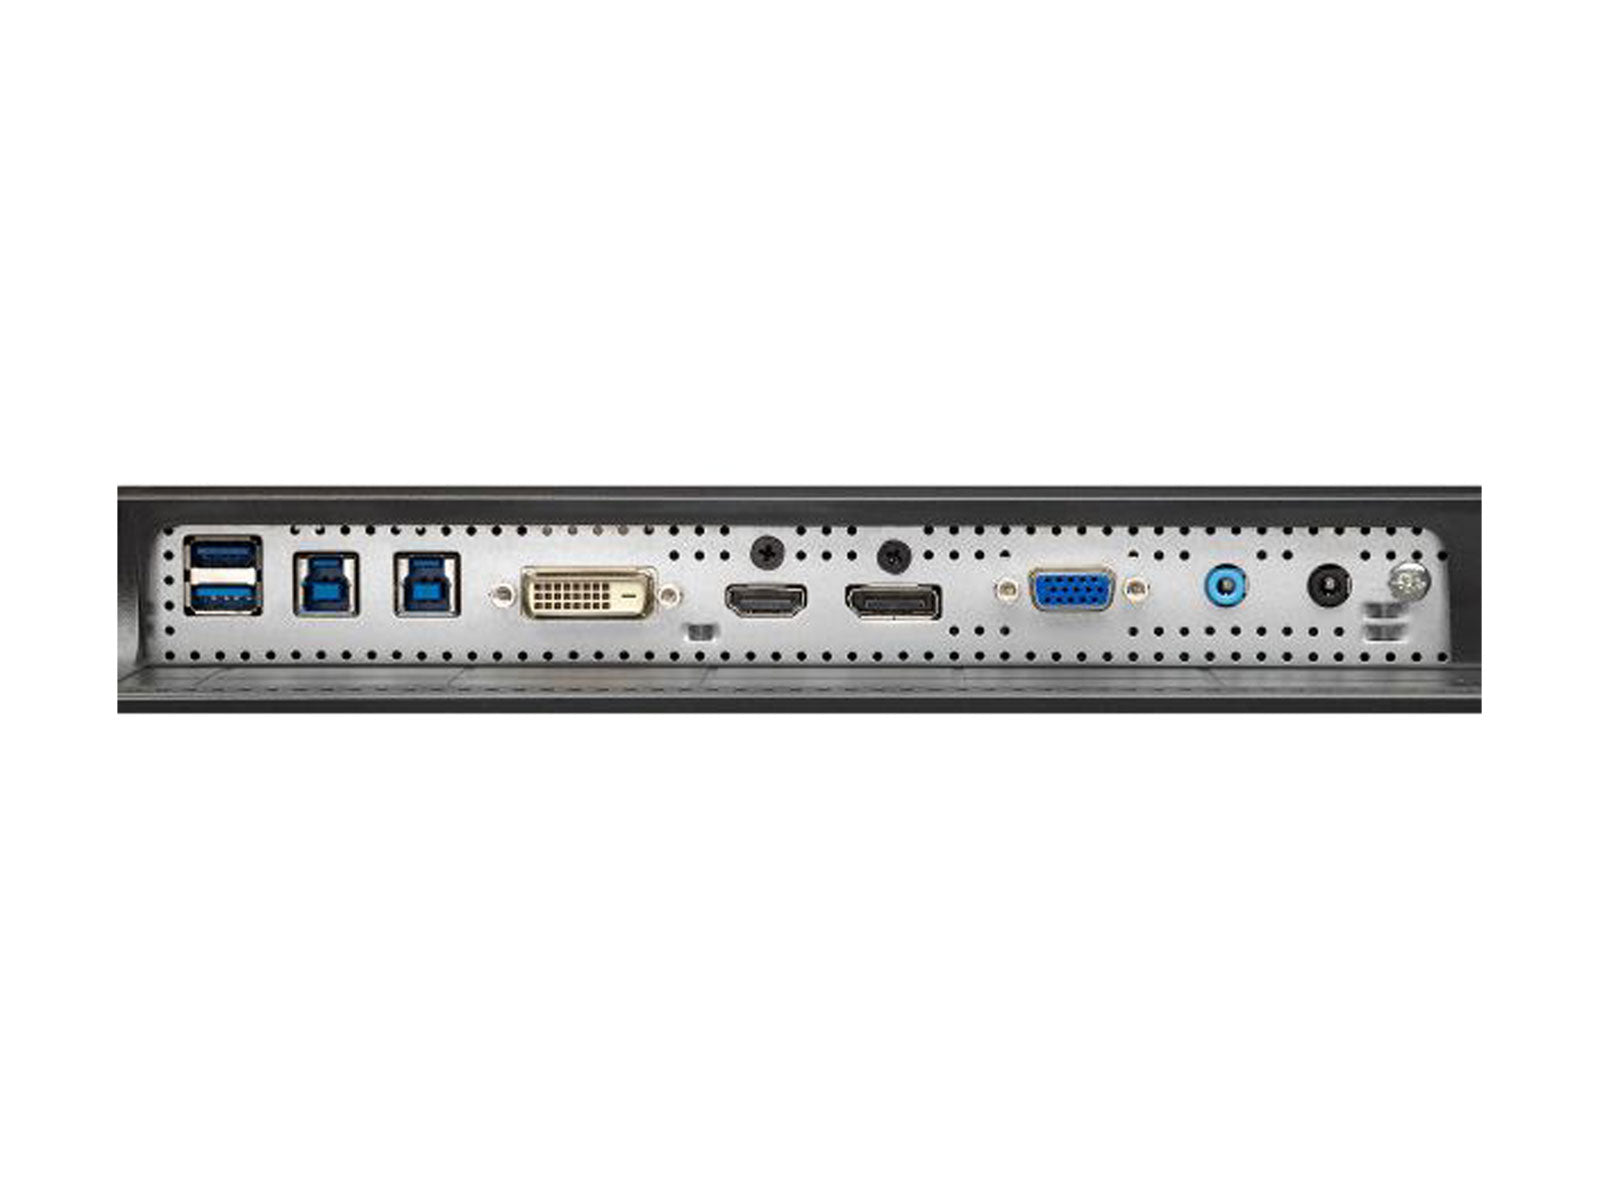 NEC MultiSync PA243W 24" WUXGA 1920x1200 professionelle Wide Gamut Display-Monitore (PA243W)